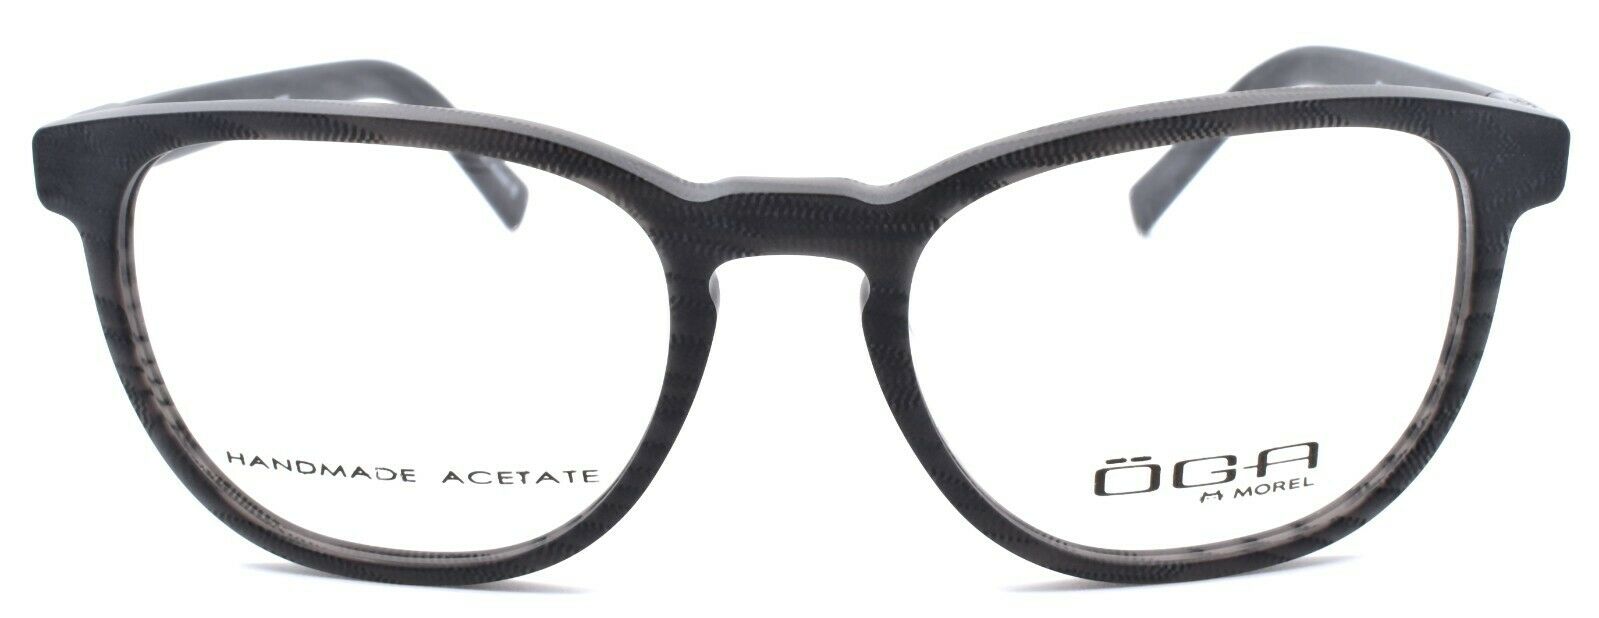 2-OGA by Morel 8312O NN011 Men's Eyeglasses Frames 51-18-140 Black-3604770905656-IKSpecs